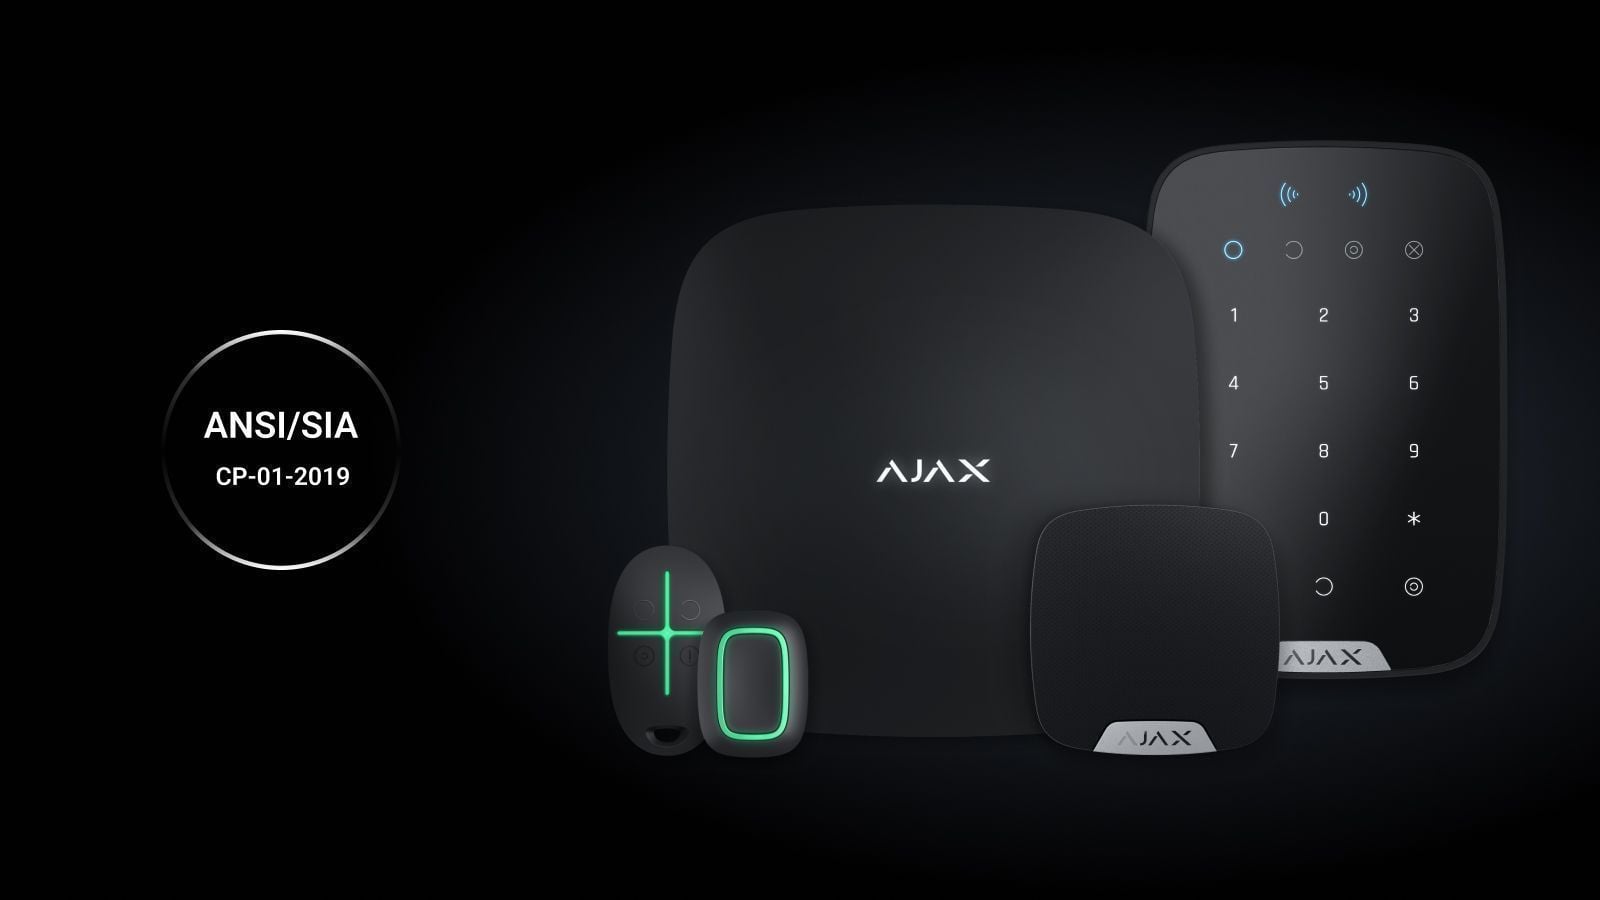 Os dispositivos Ajax estão agora em conformidade com a norma americana SIA CP-01